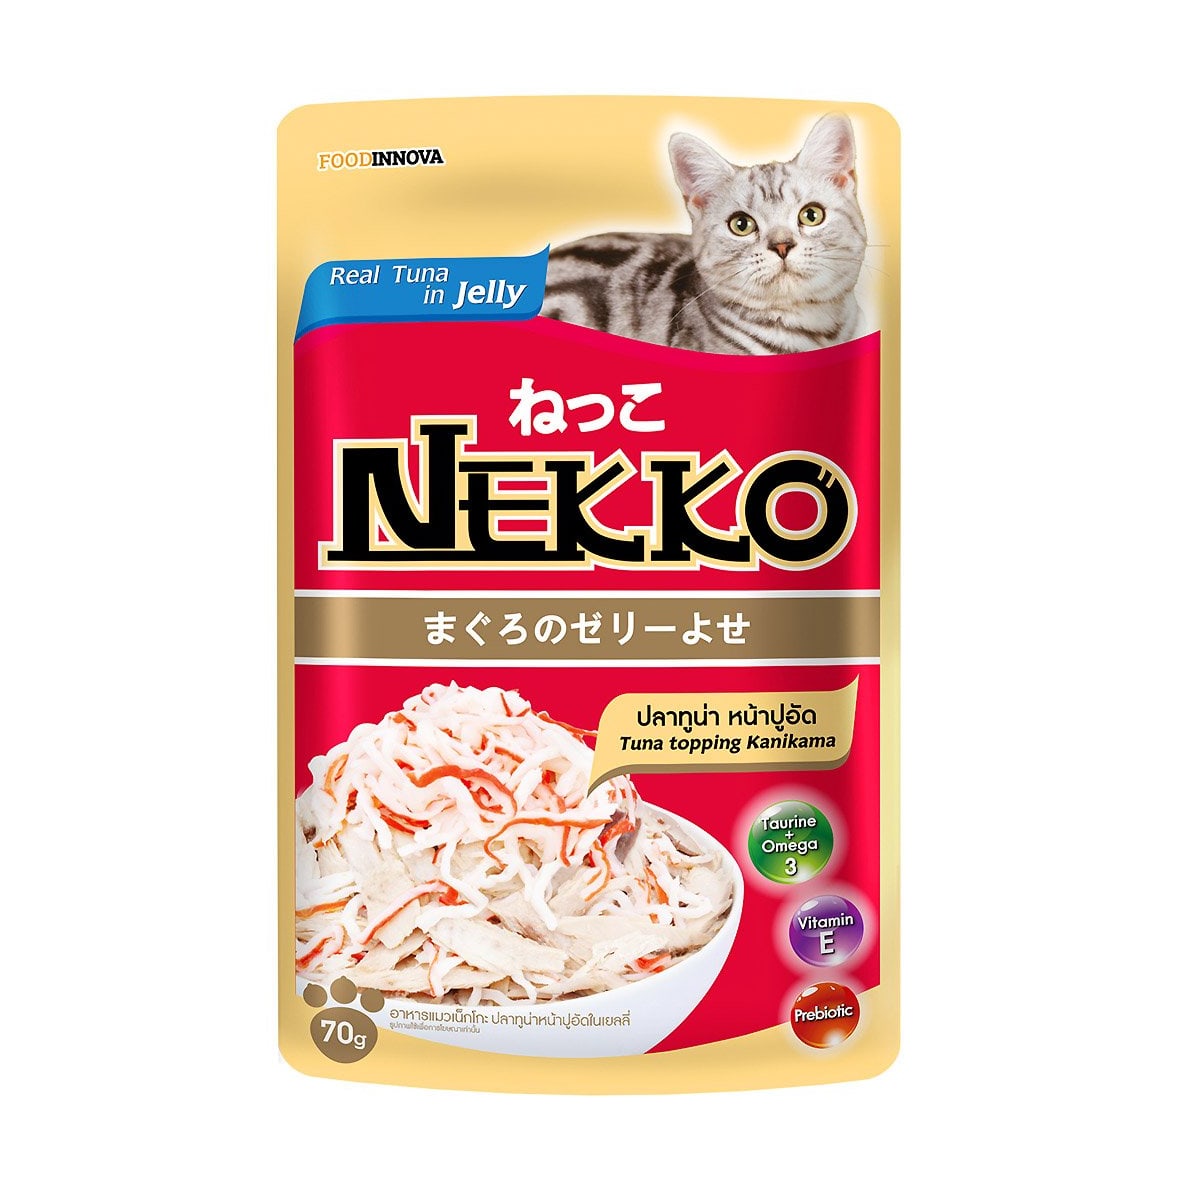 Nekko เน็กโกะ อาหารเปียก สำหรับแมว รสปลาทูน่าในเจลลี่ปูอัด 70 g_1